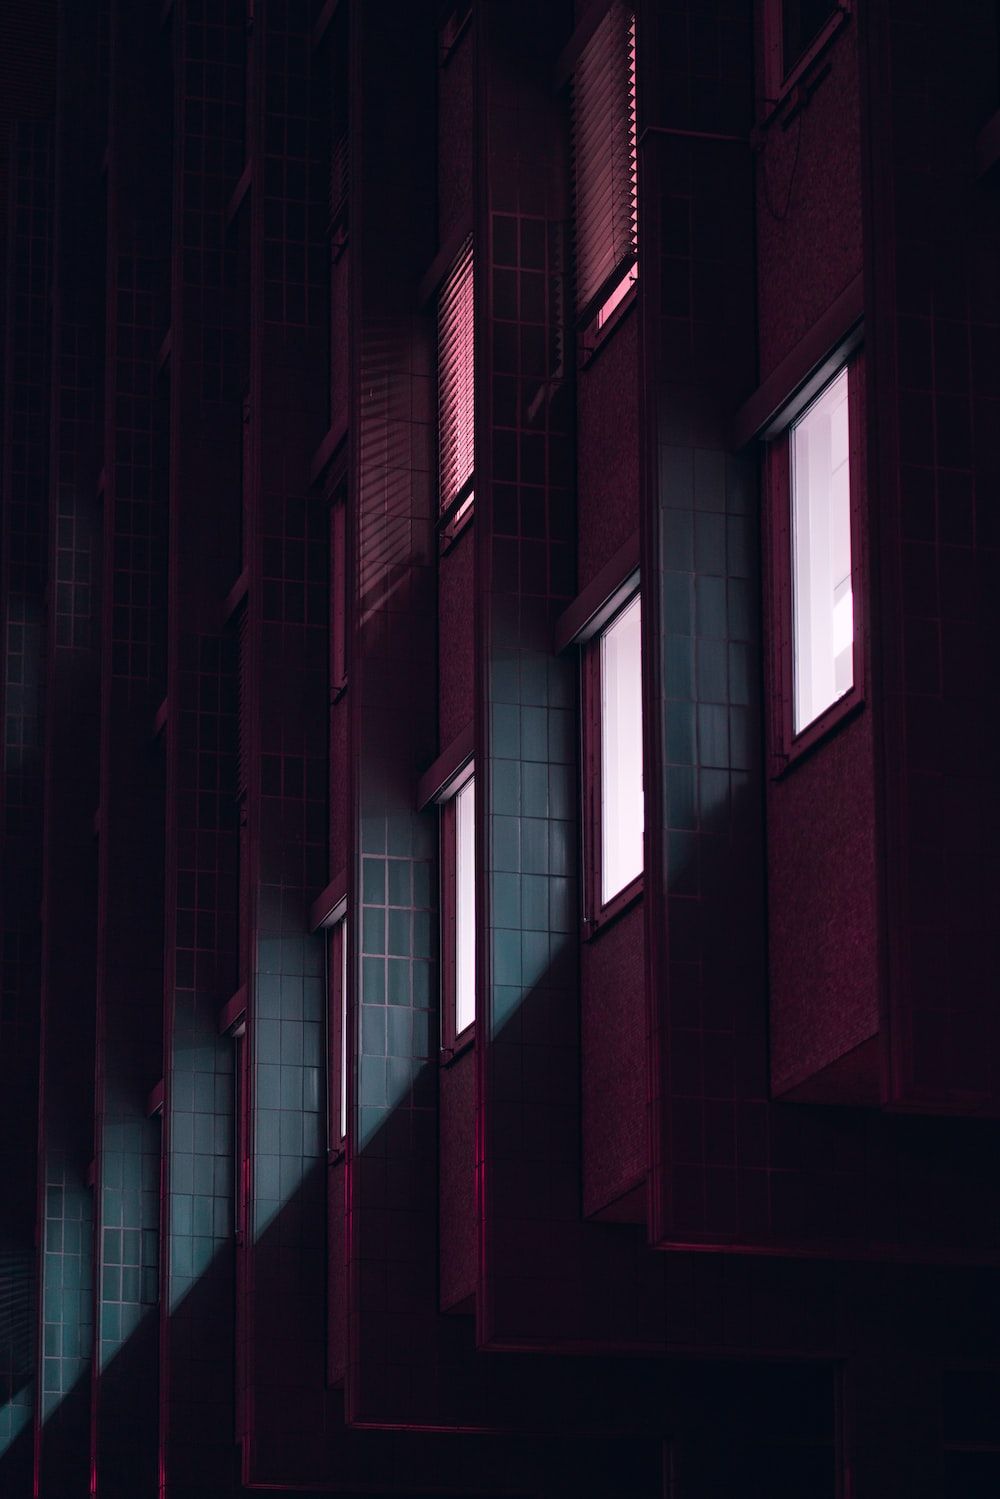  Gebäude Hintergrundbild 1000x1499. Foto zum Thema Eine Fensterreihe in einem dunklen Gebäude